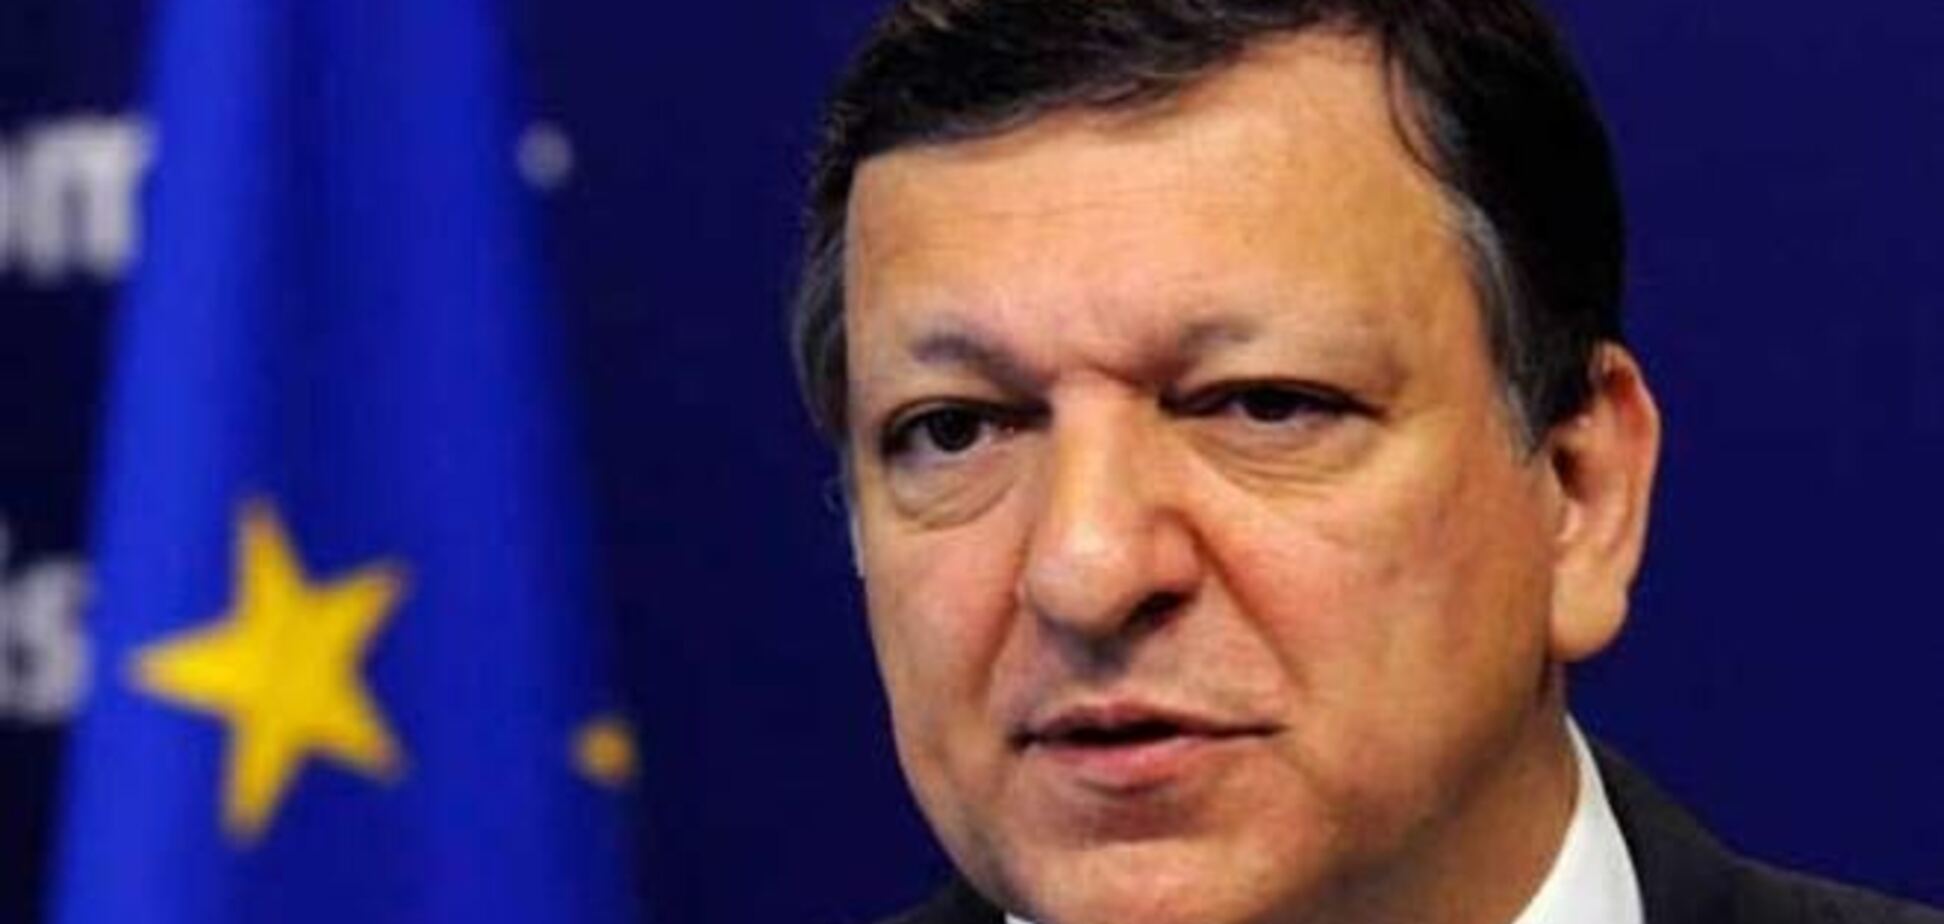 ЕС не будет платить за подписание Украиной ассоциации - Баррозу